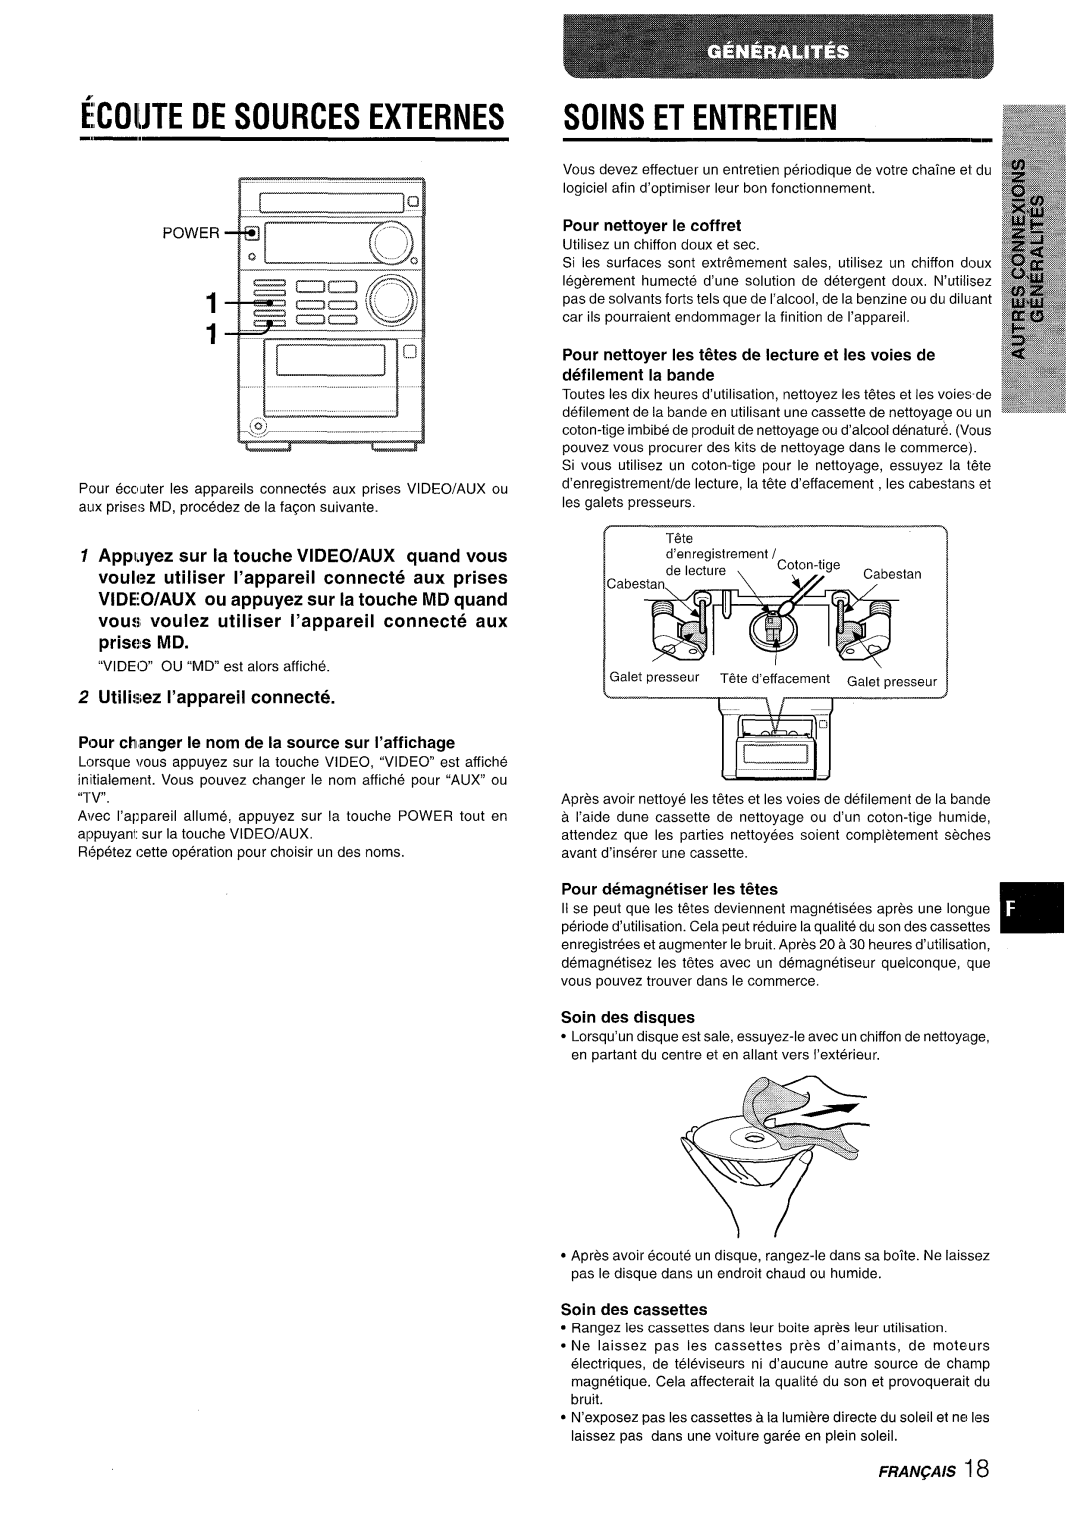 Aiwa XR-M35 manual FCOIMTE DE sOURcEs EXTERNES, Utilisez I’appareil connecte, Soin des disques, Soin des cassettes 